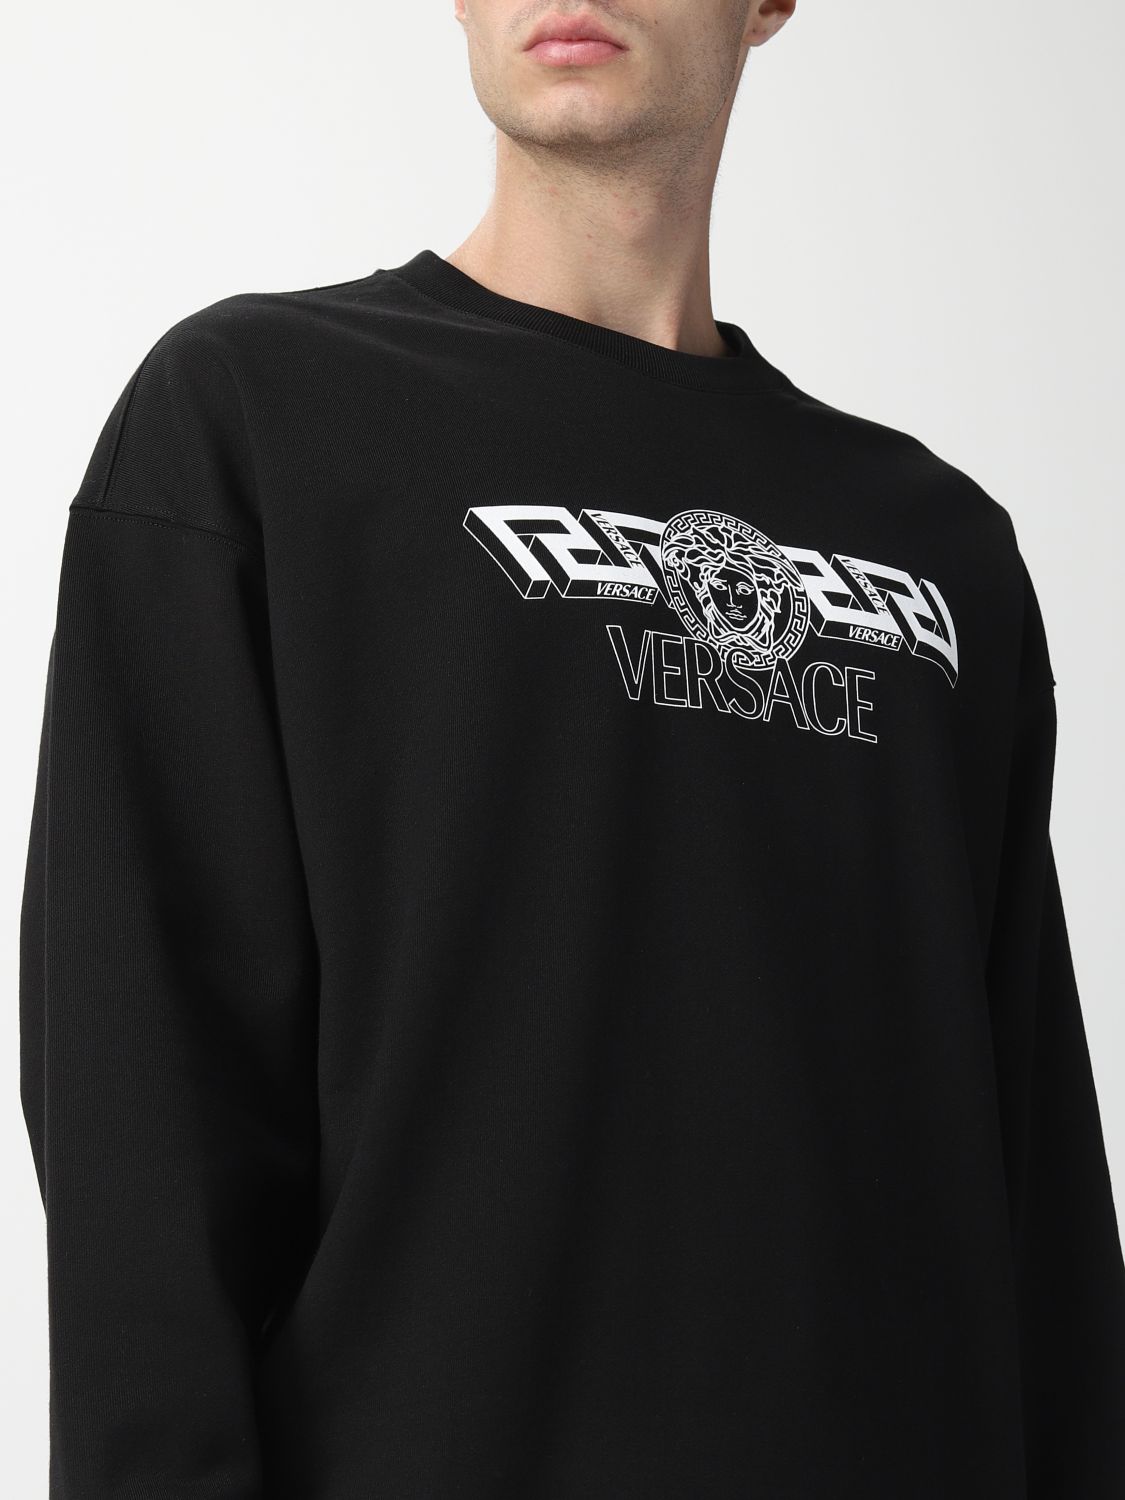 Sweatshirt Versace: Sweatshirt Versace homme noir 4